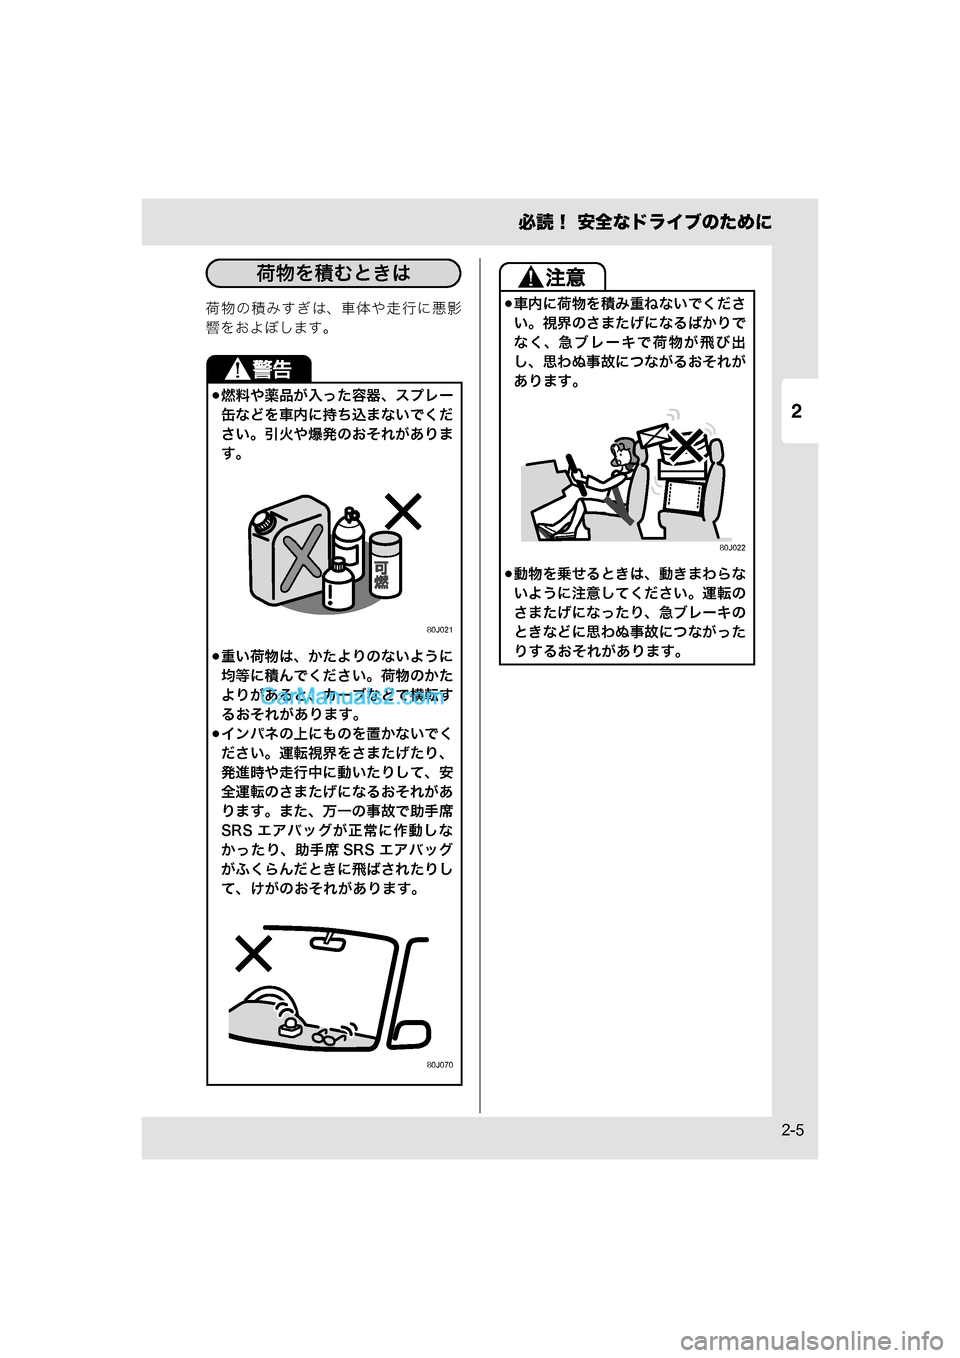 MAZDA MODEL CARROL 2015  取扱説明書 (キャロル) (in Japanese) 2
必読！ 安全なドライブのために
2-5
荷物の積みすぎは、車体や走行に悪影
響をおよぼします。
燃料や薬品が入った容器、スプレー
缶などを車内